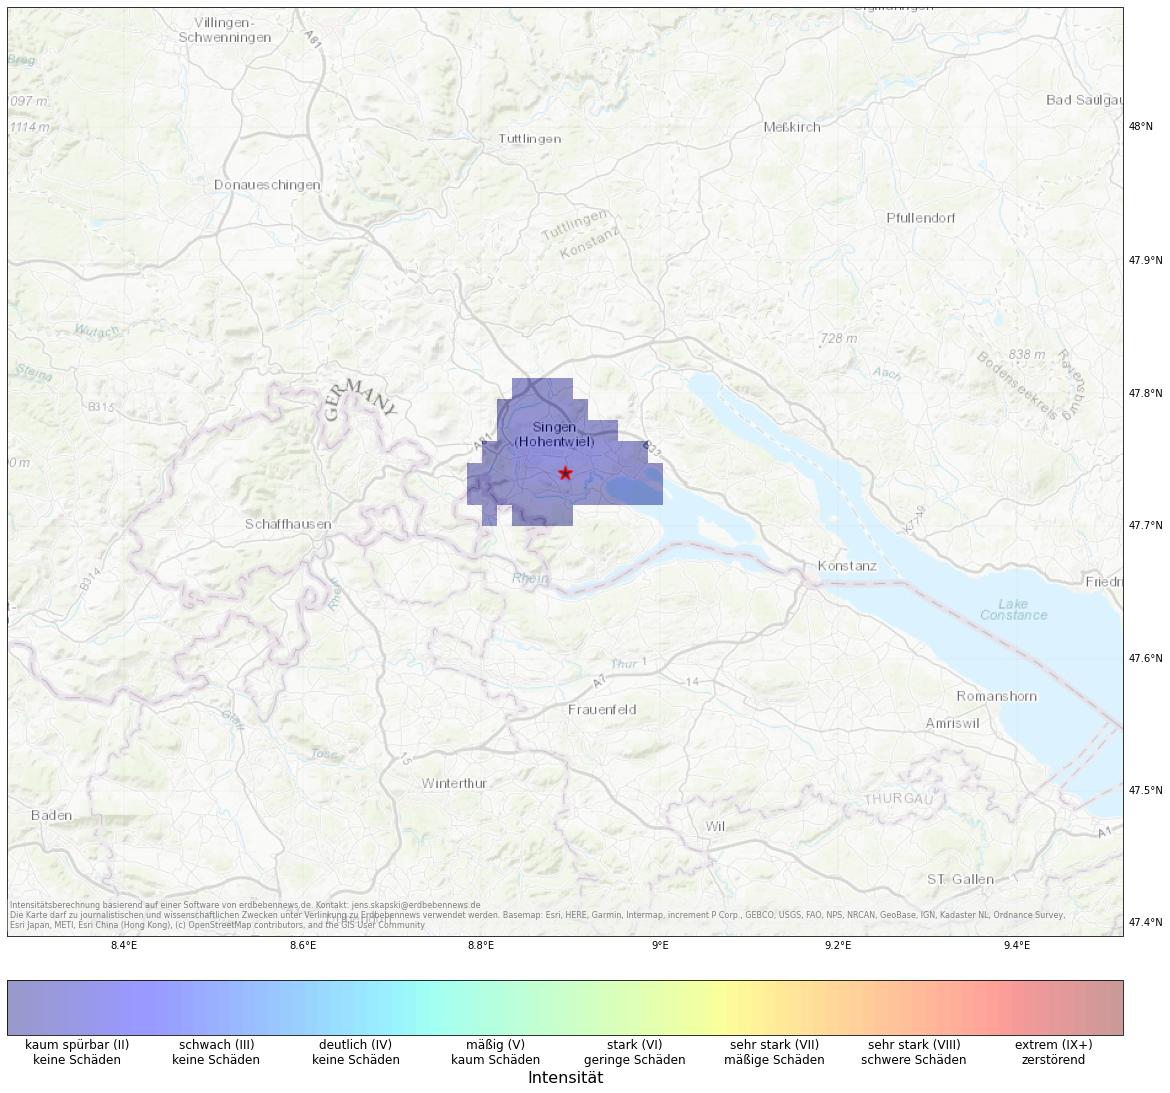 Berechnete Intensität (ShakeMap) des Erdbebens der Stärke 2.2 am 15. January, 03:31 in Deutschland